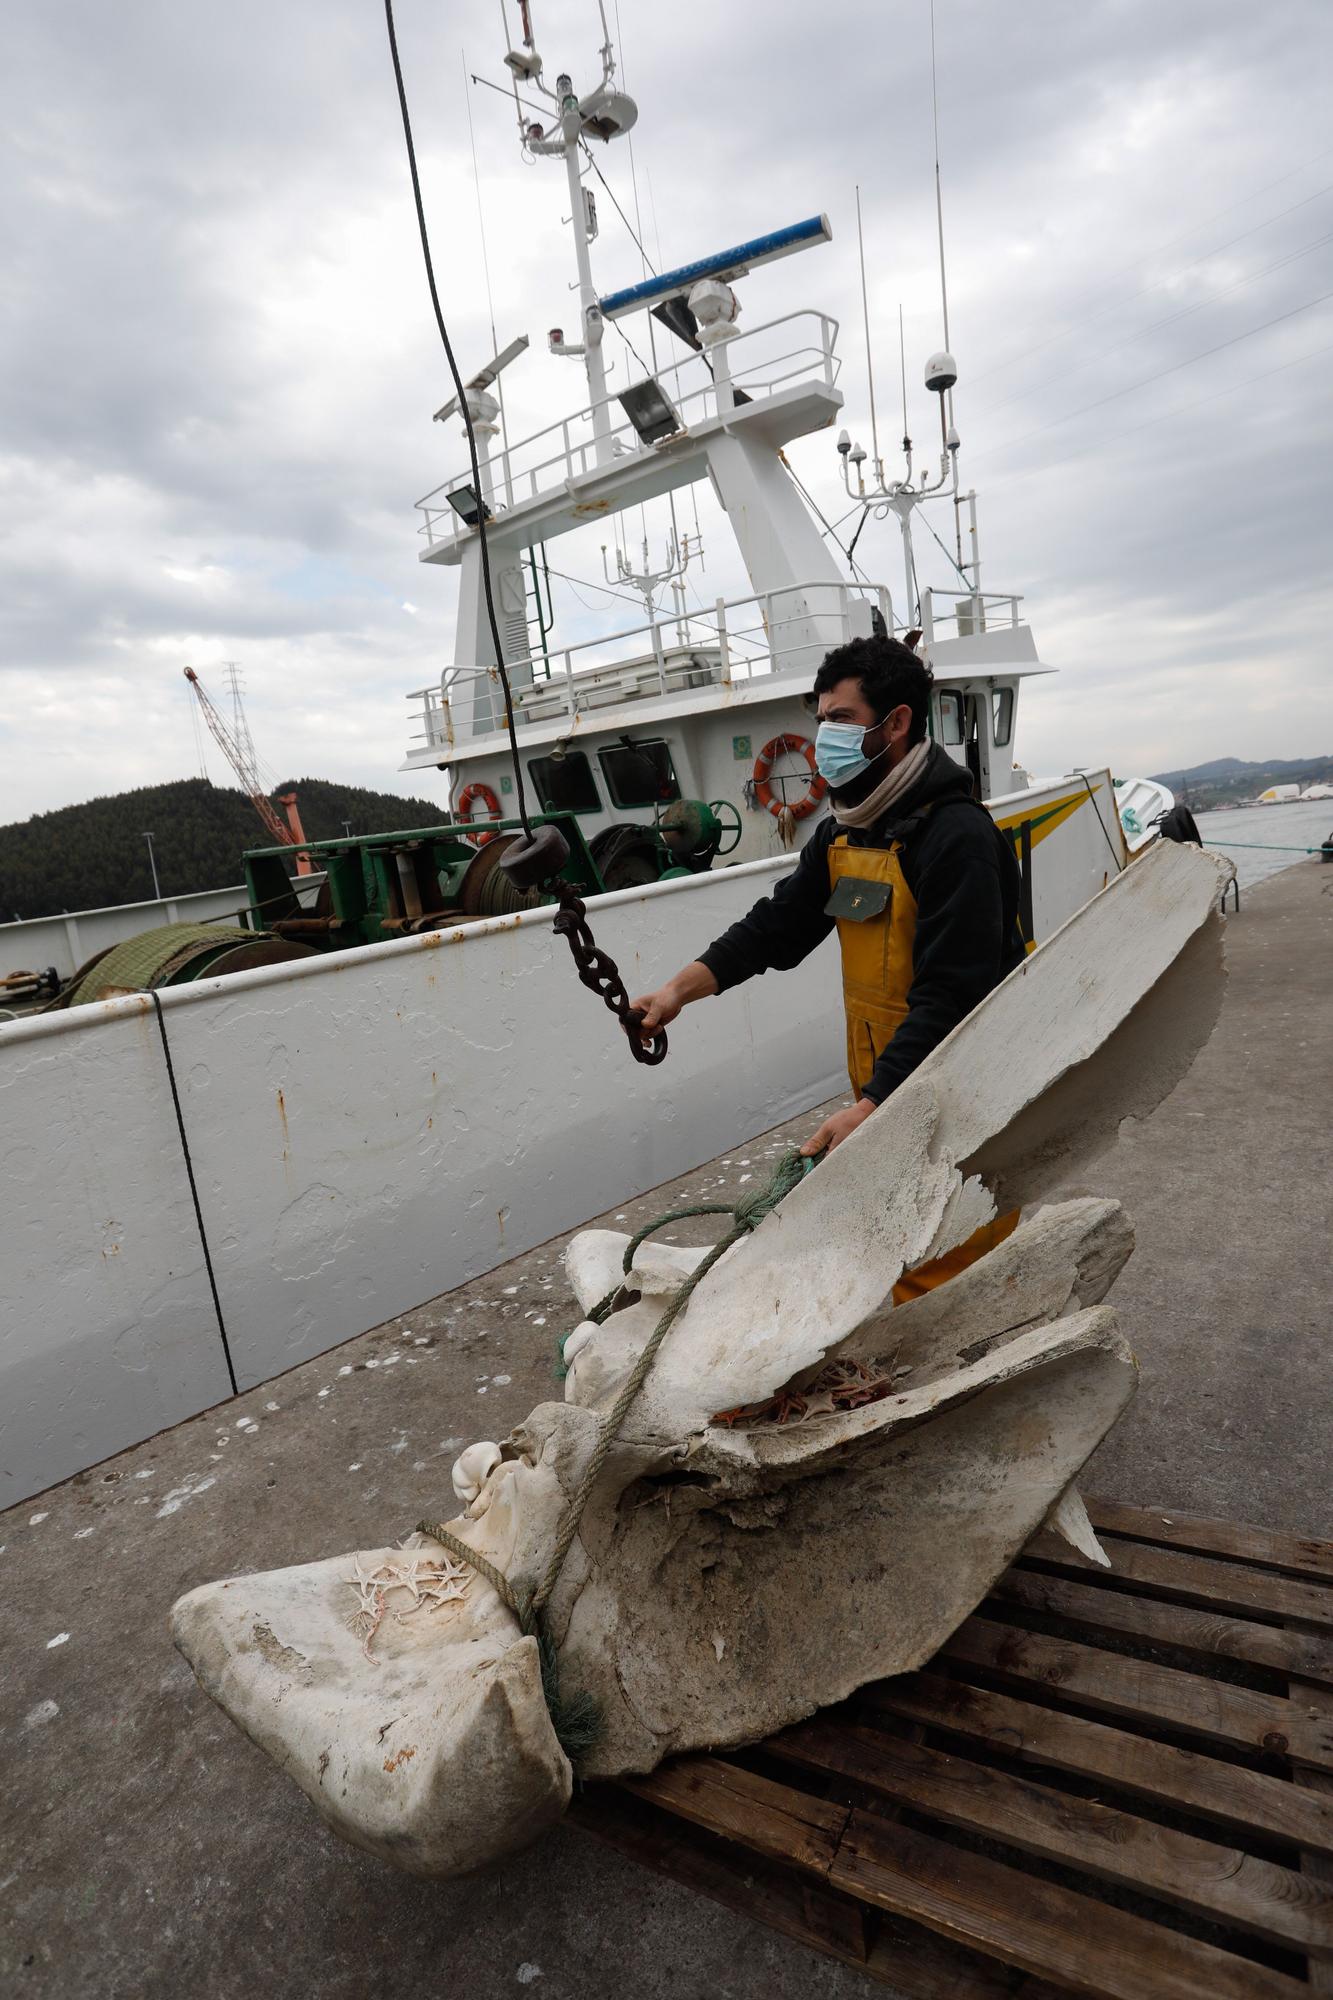 Hallazgo entre las redes: "pescan" restos de una ballena a 20 millas de Avilés